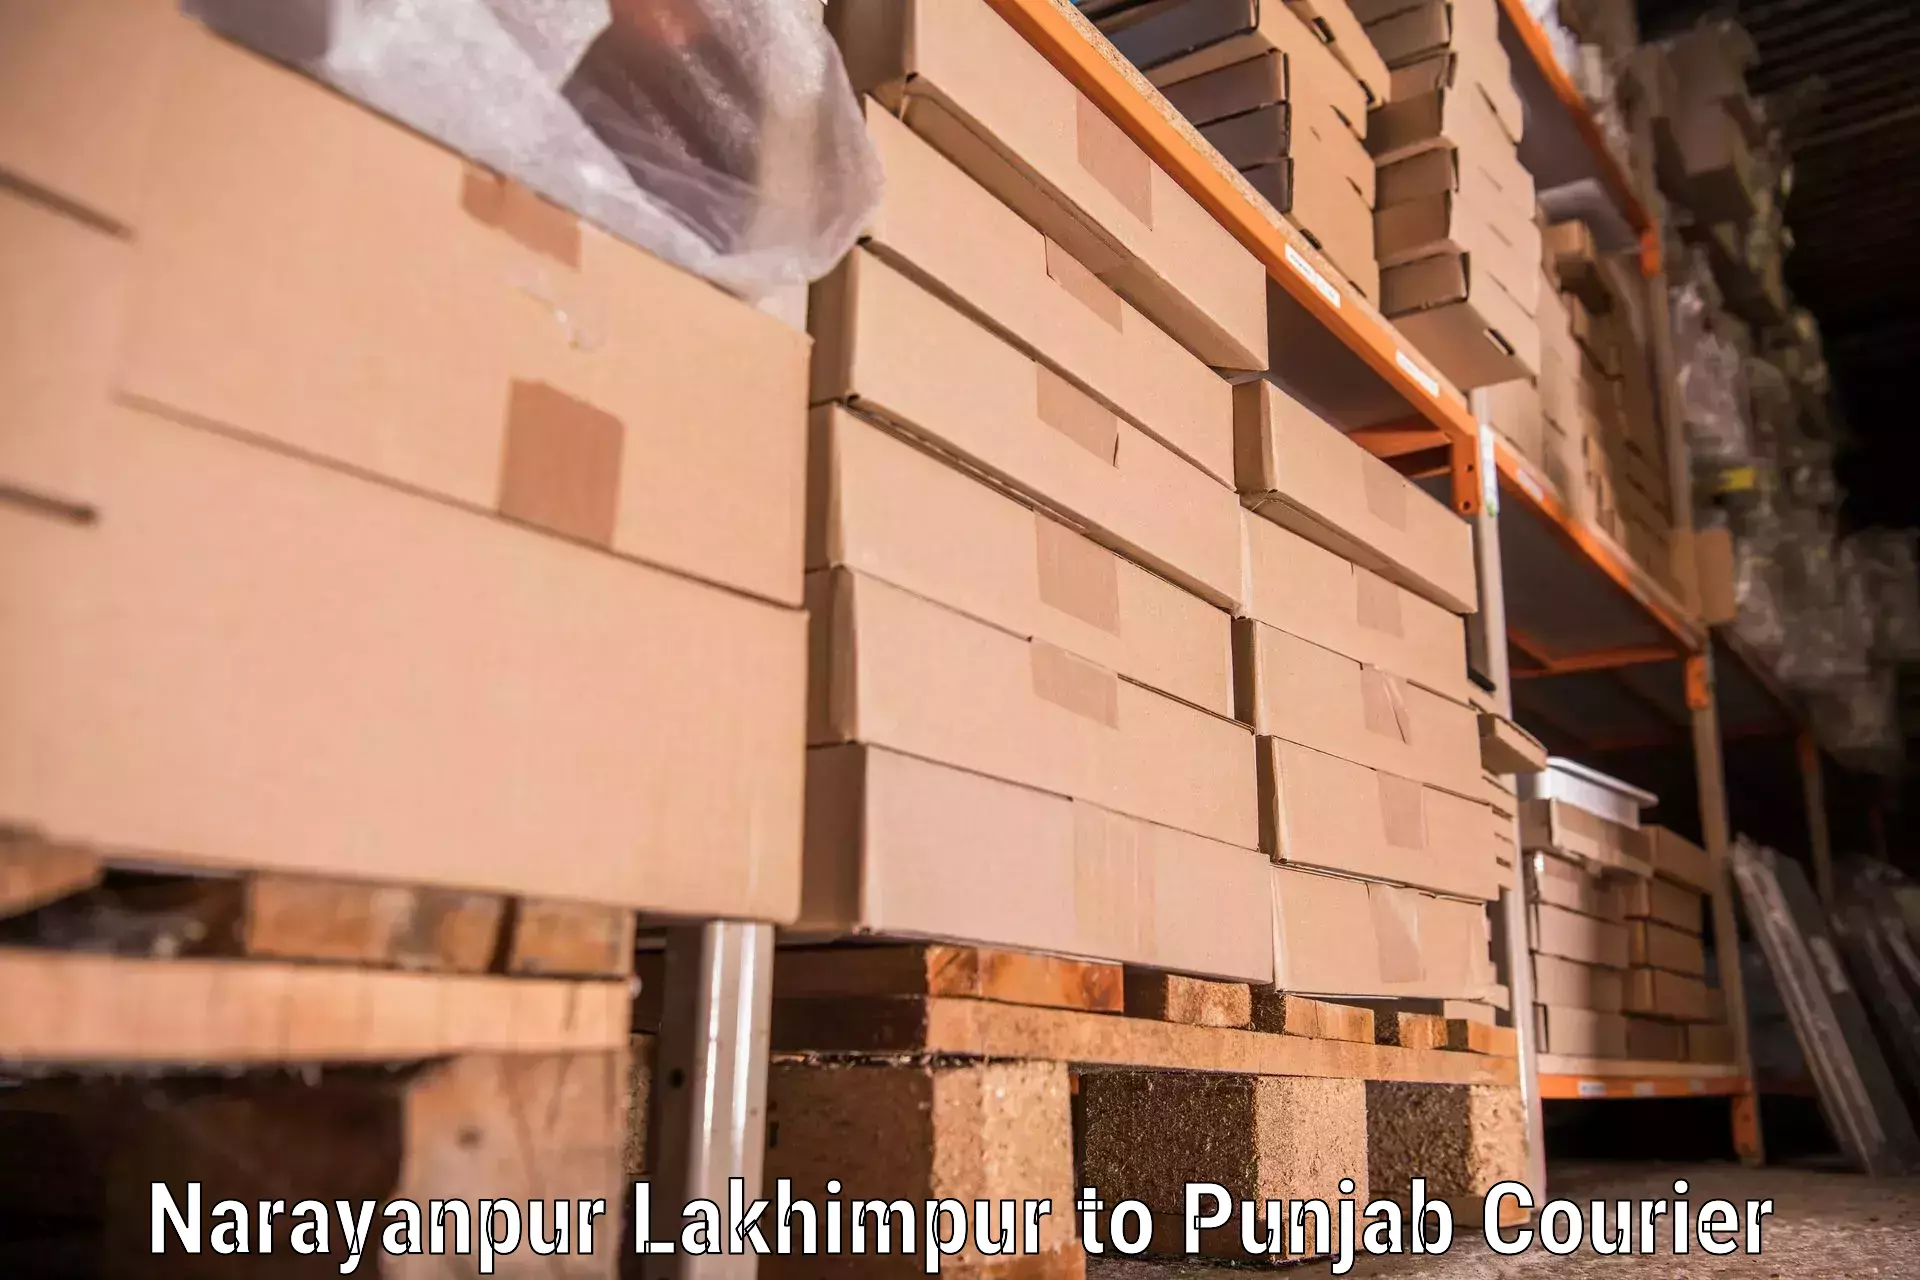 Furniture moving strategies Narayanpur Lakhimpur to Patiala